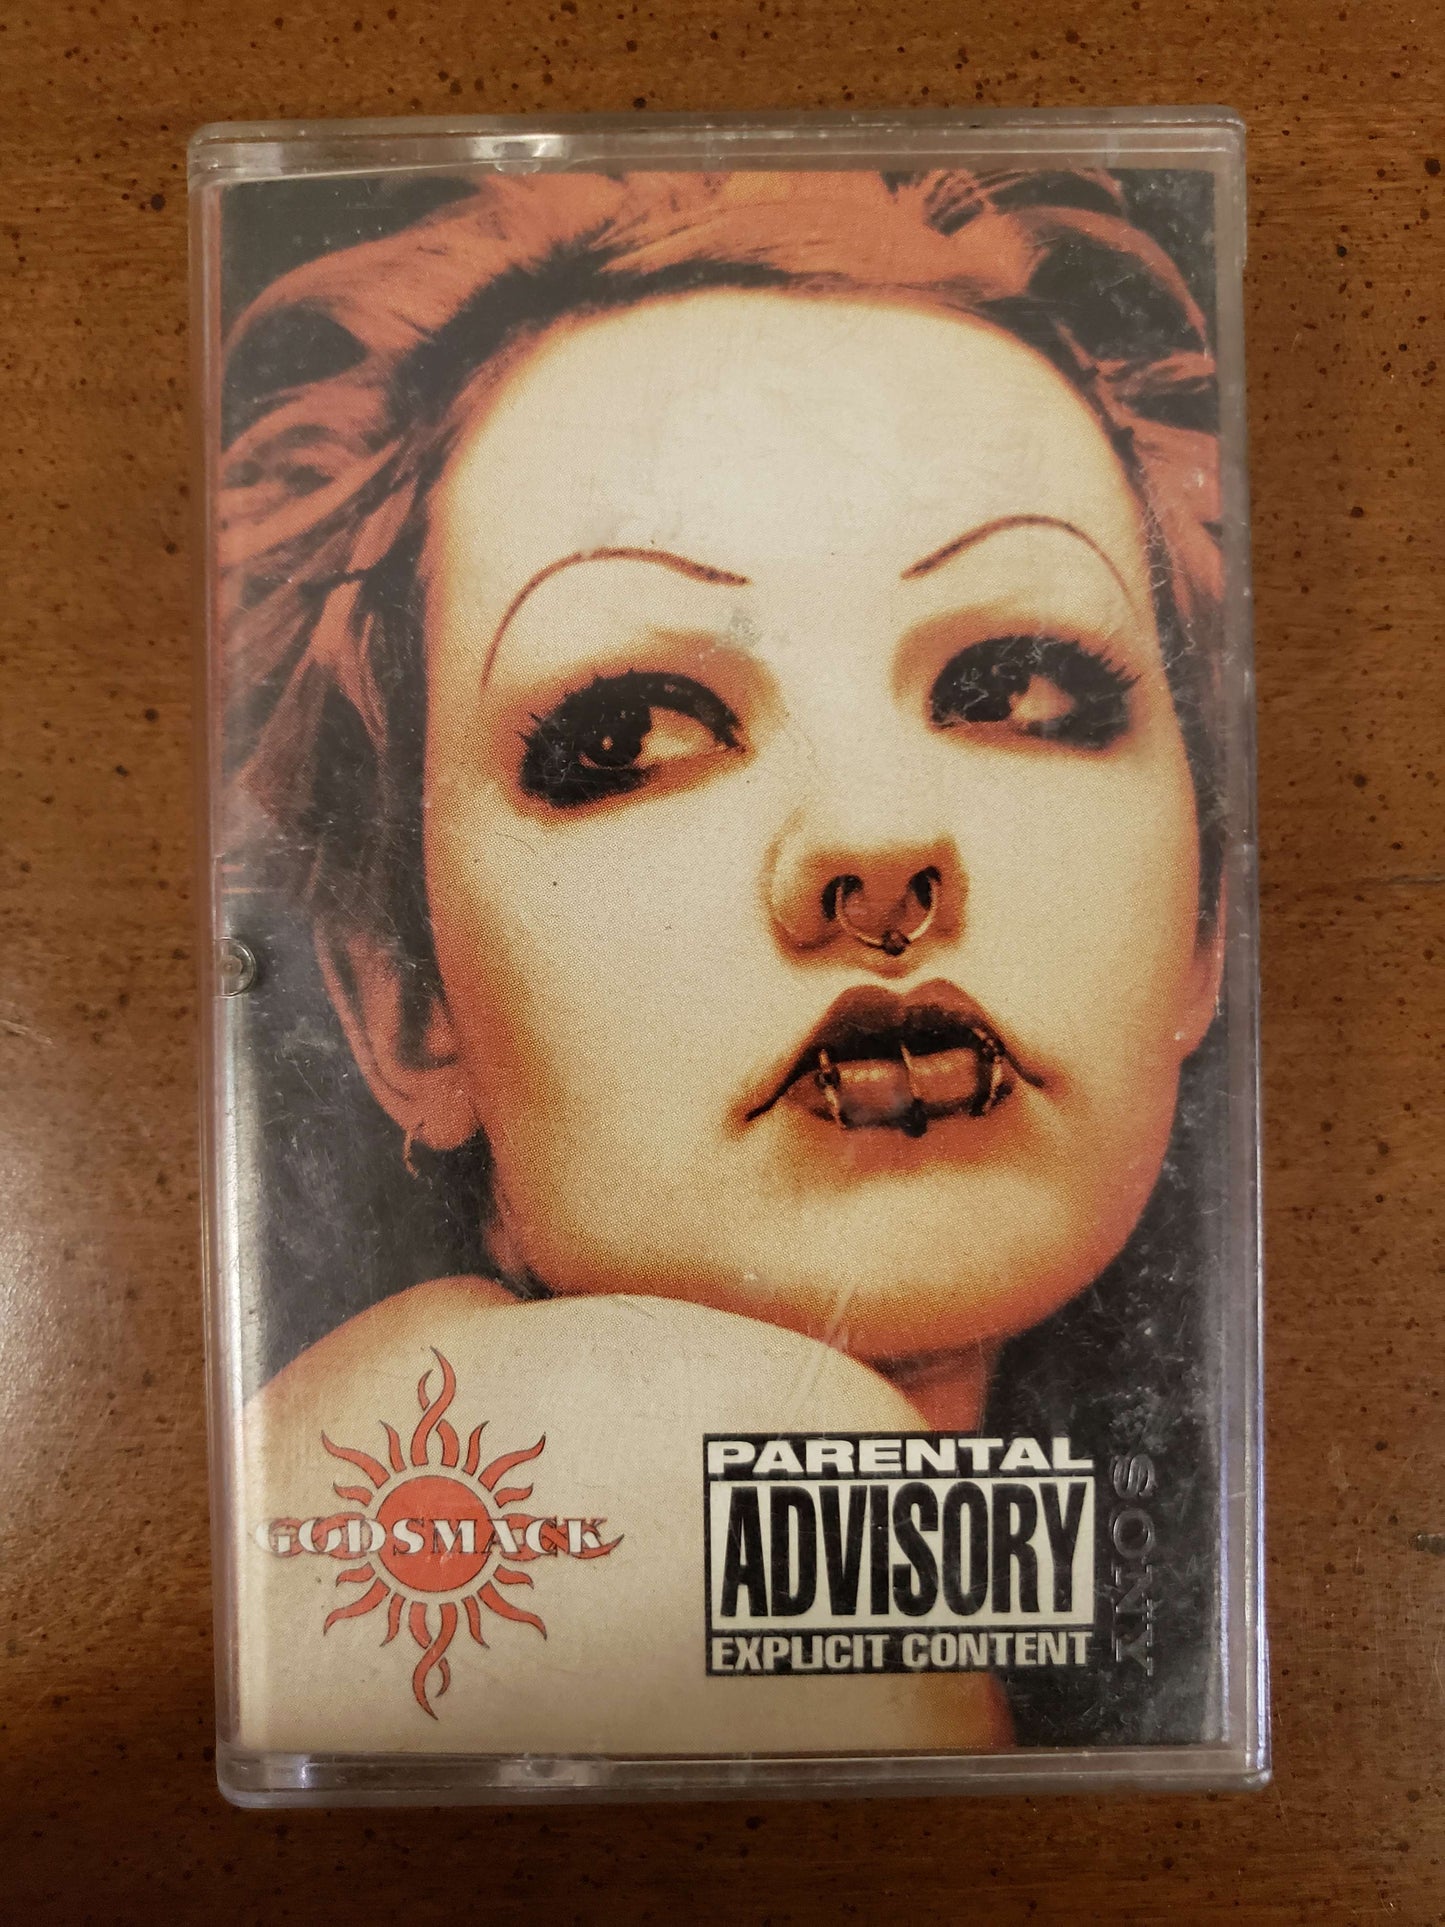 Godsmack cassette tape